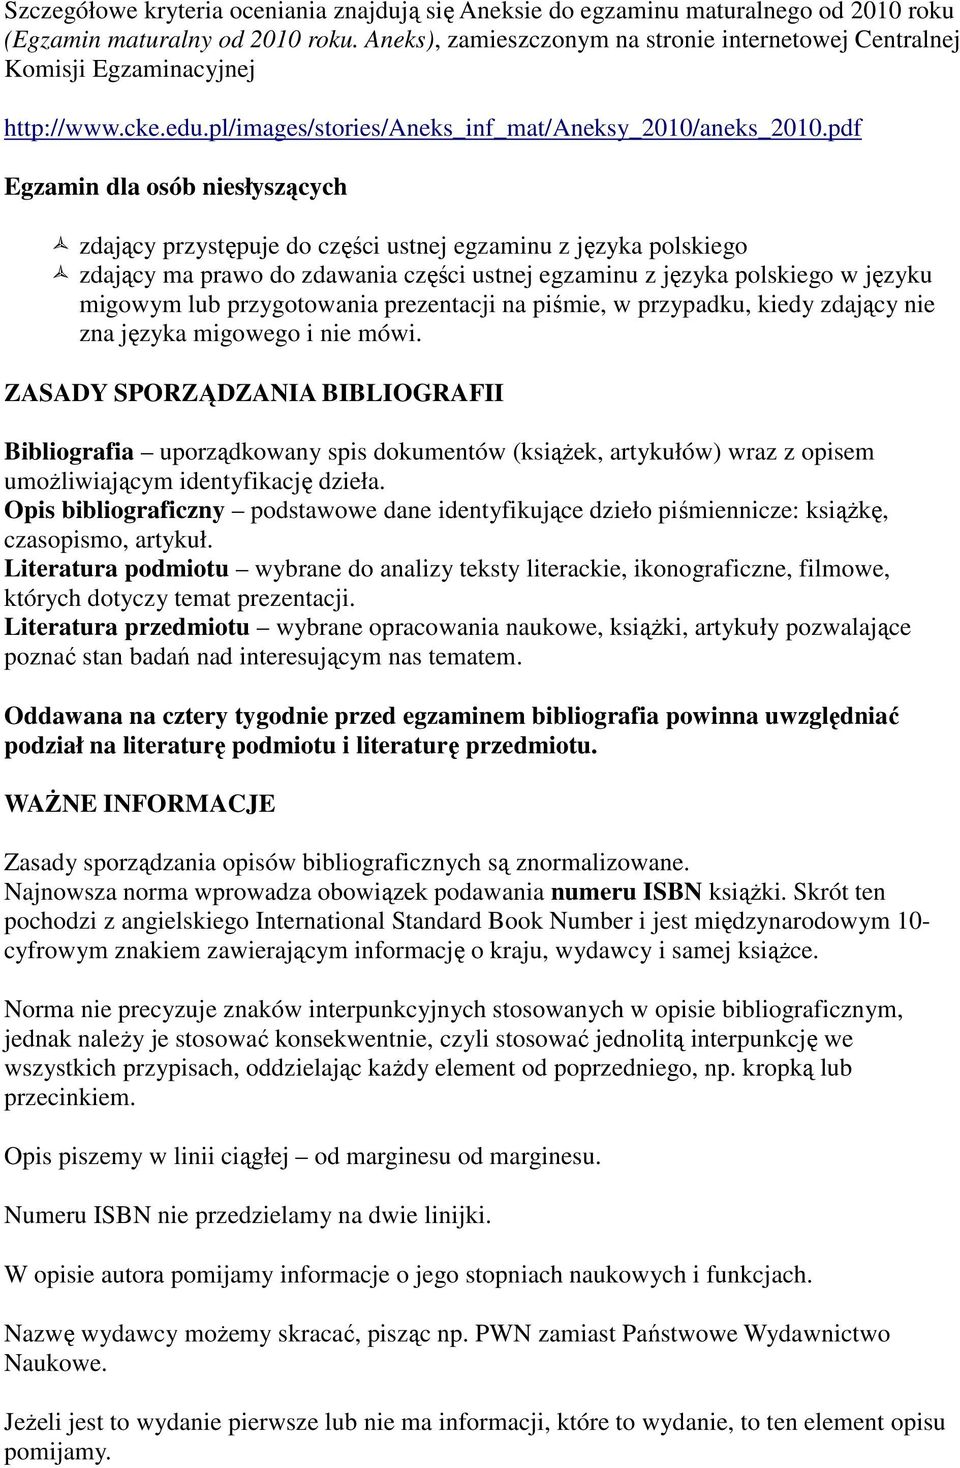 pdf Egzamin dla osób niesłyszących zdający przystępuje do części ustnej egzaminu z języka polskiego zdający ma prawo do zdawania części ustnej egzaminu z języka polskiego w języku migowym lub